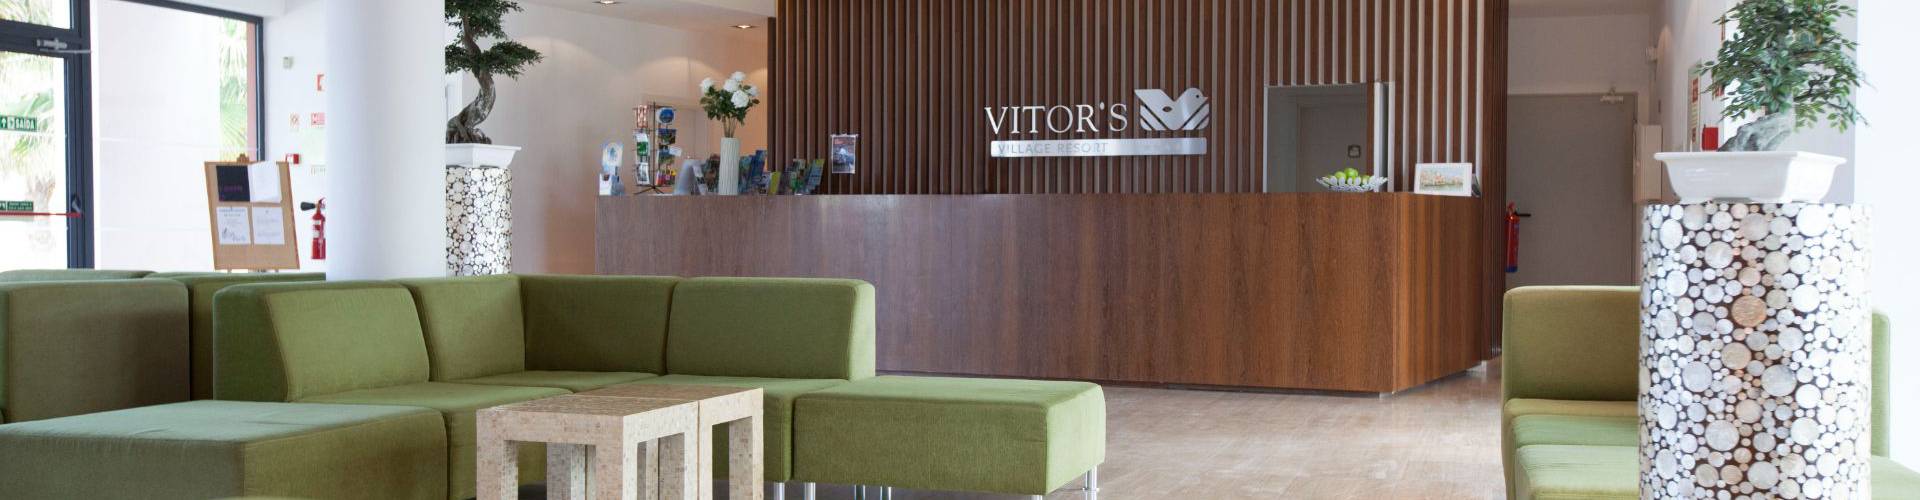 Vitors hotels -  - Contacto